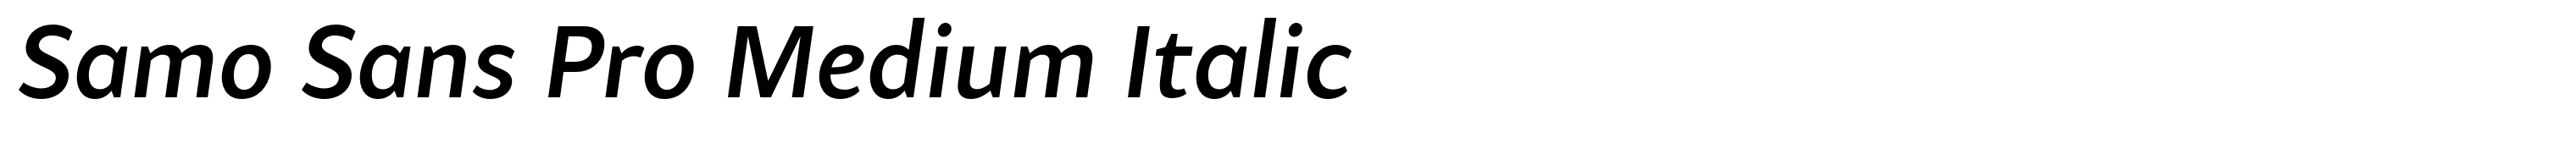 Samo Sans Pro Medium Italic